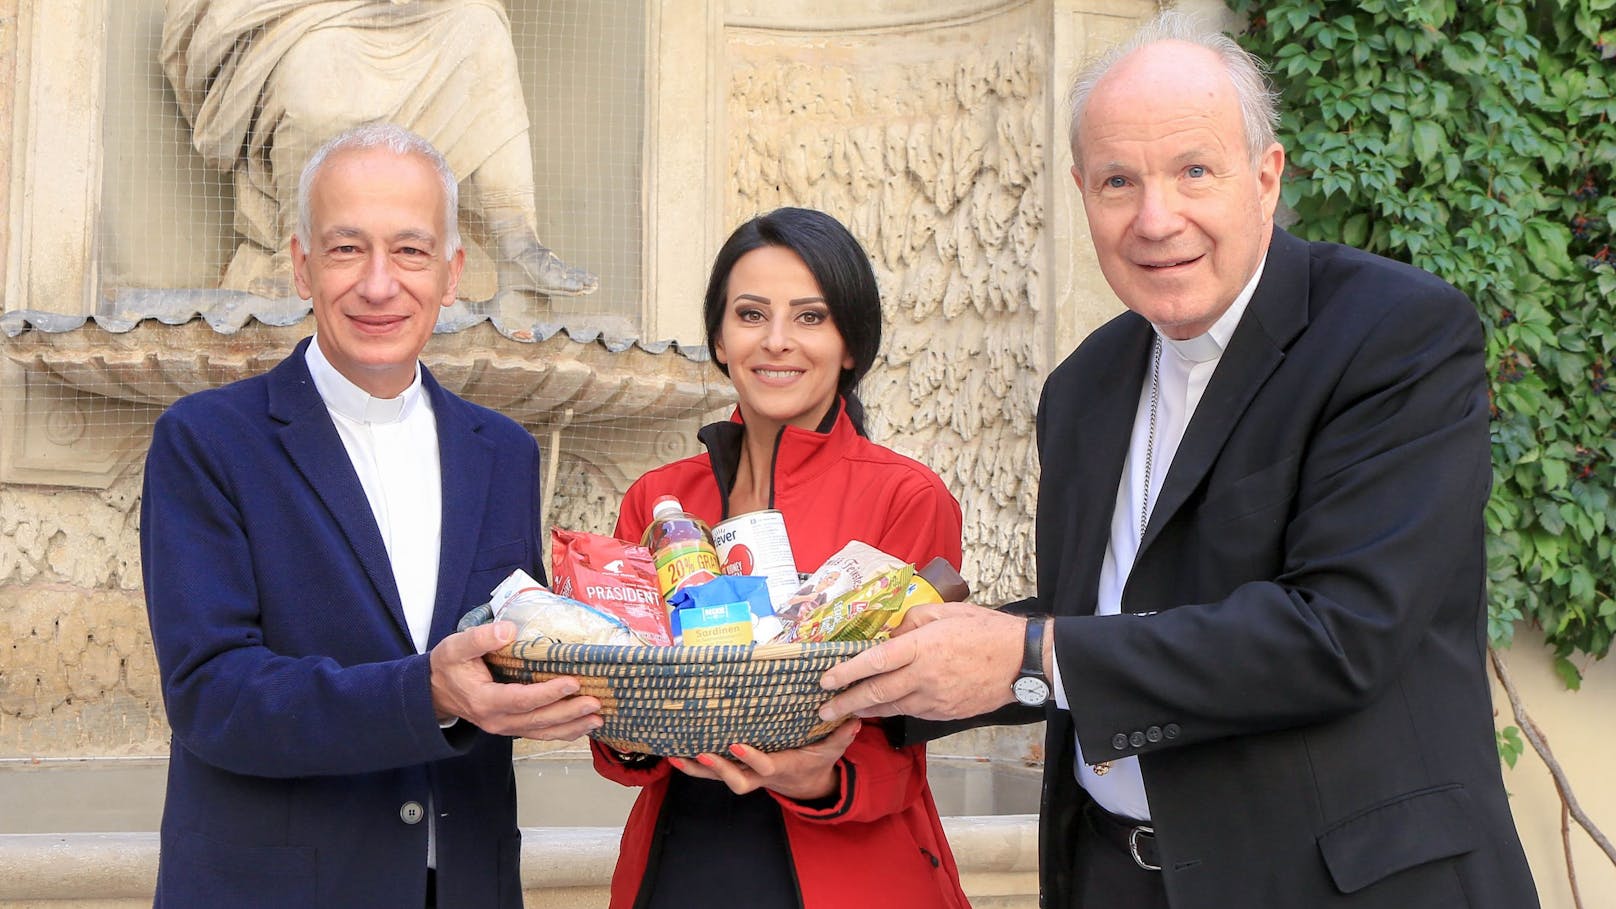 Die Caritas startet jetzt ihre Erntedanksammlung. Caritas-Chef Landau und Kardinal Schönborn bitten um Lebensmittelspenden für Armutsgefährdete.